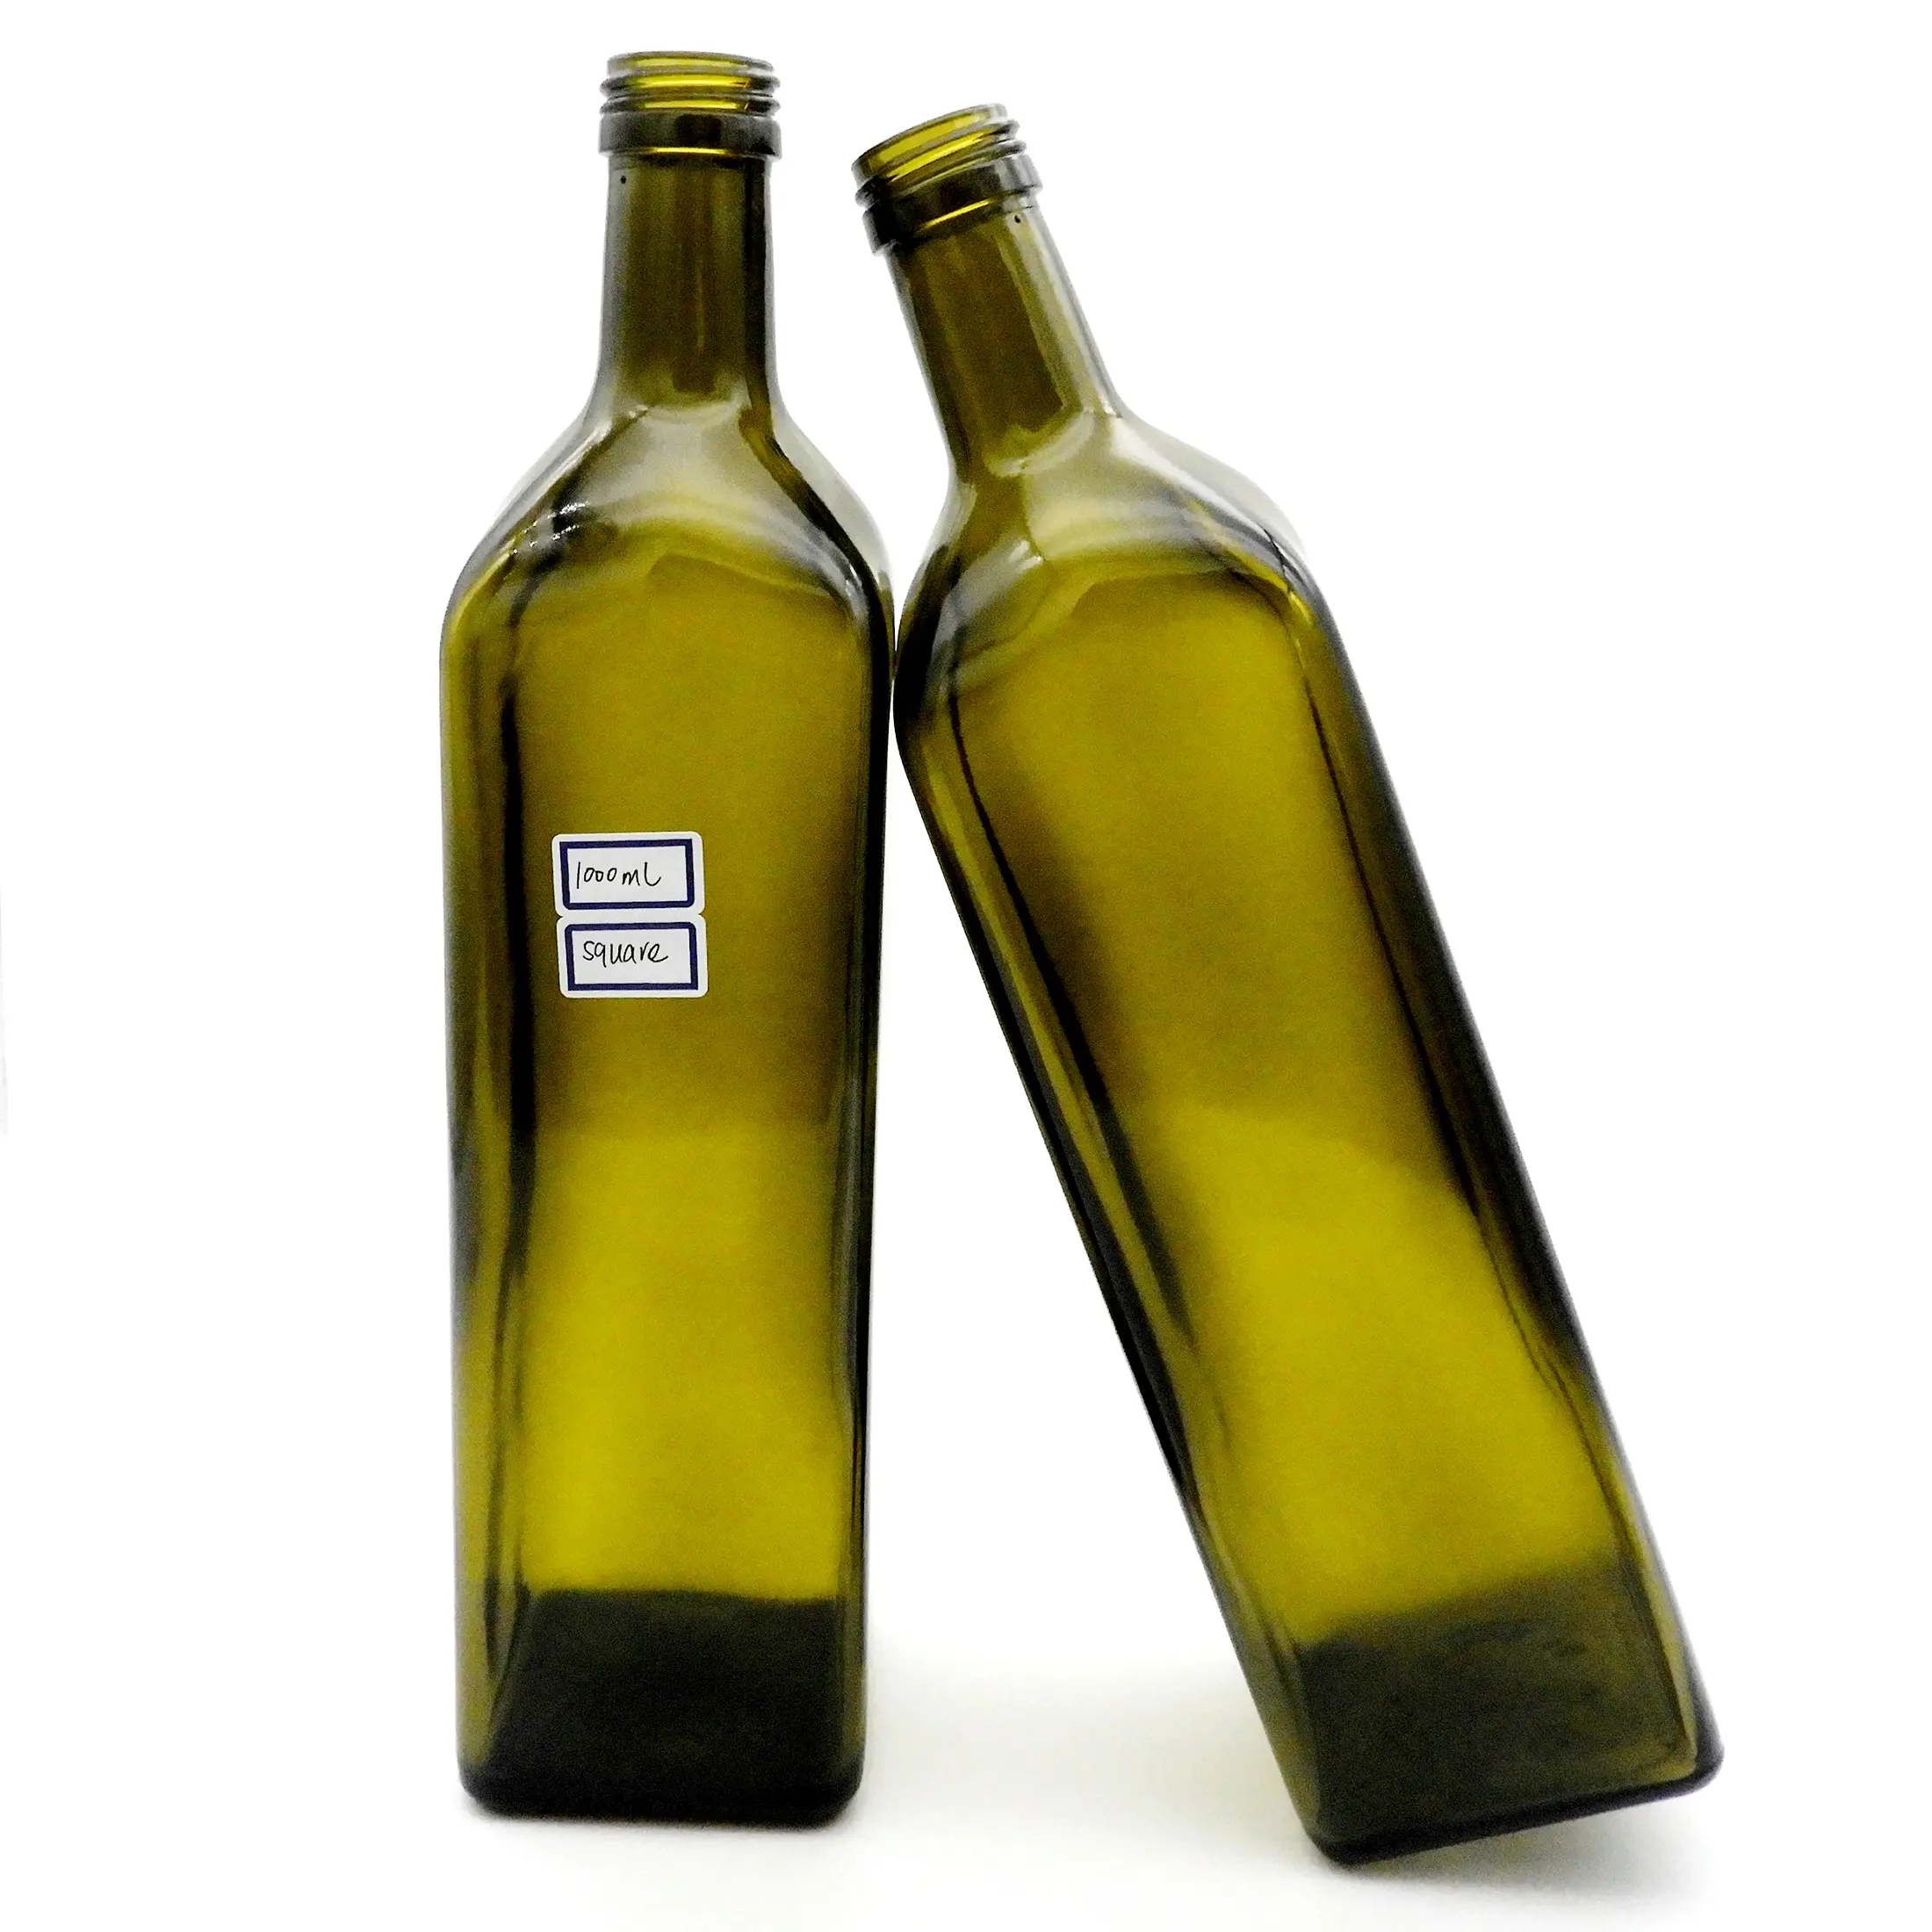 1000ml Glass Olive Oil Bottle Manufacturer 1 Liter Marasca Olive Oil Bottle Wholesale